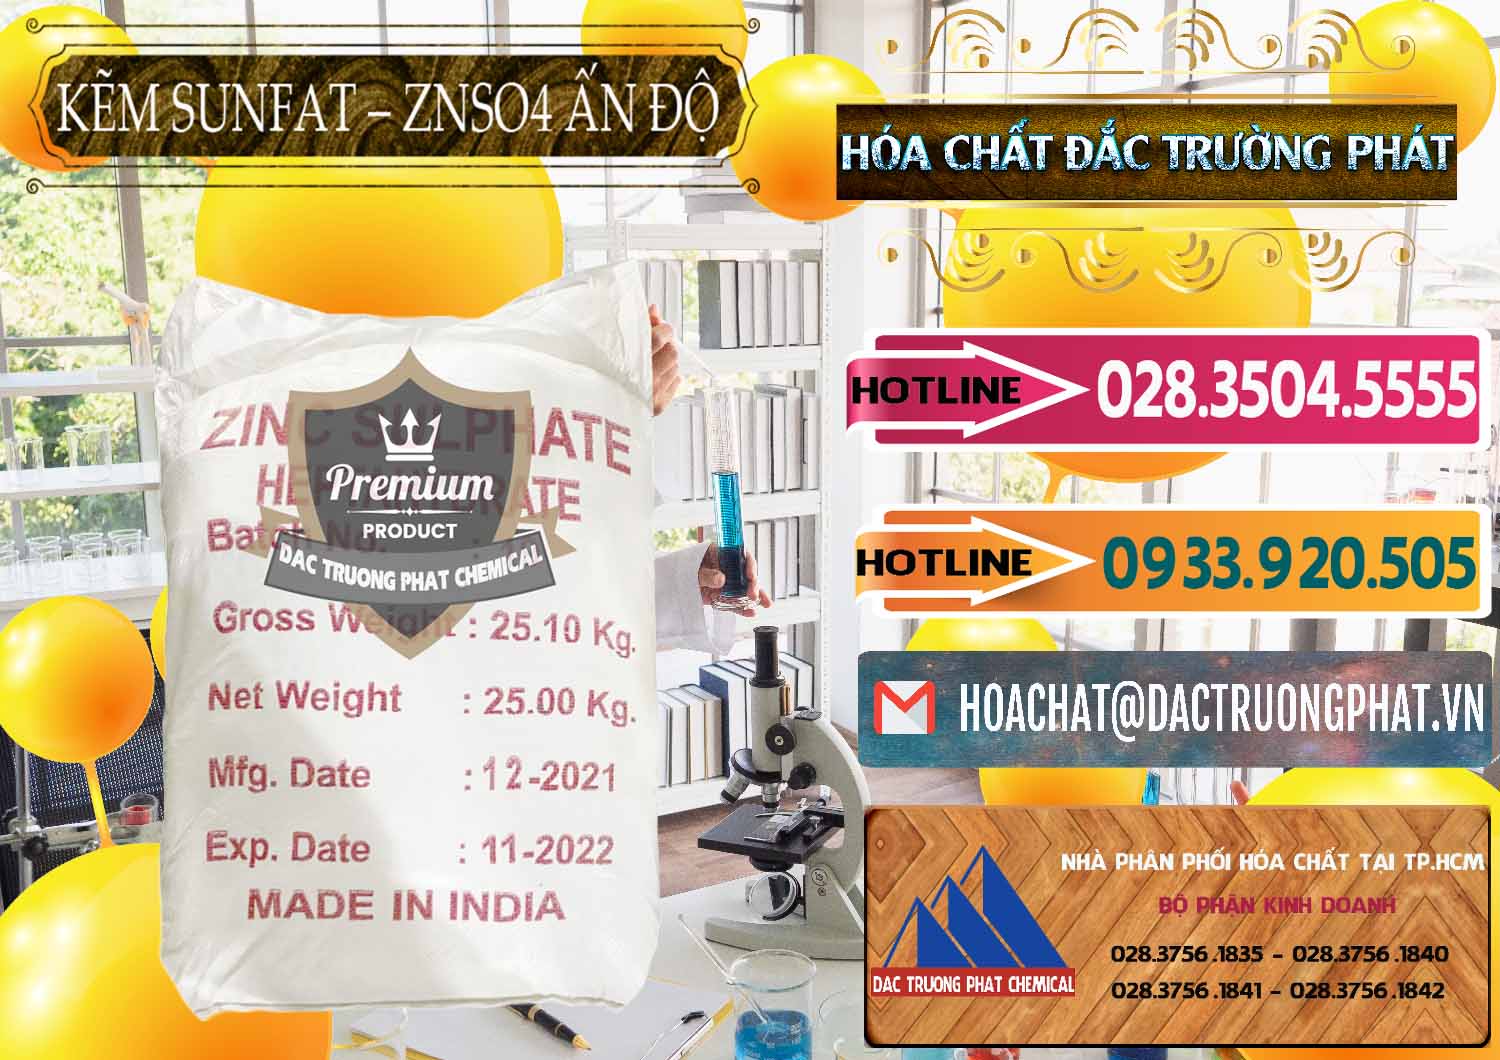 Đơn vị chuyên bán và phân phối Kẽm Sunfat – ZNSO4.7H2O Ấn Độ India - 0417 - Nơi cung cấp & phân phối hóa chất tại TP.HCM - dactruongphat.vn